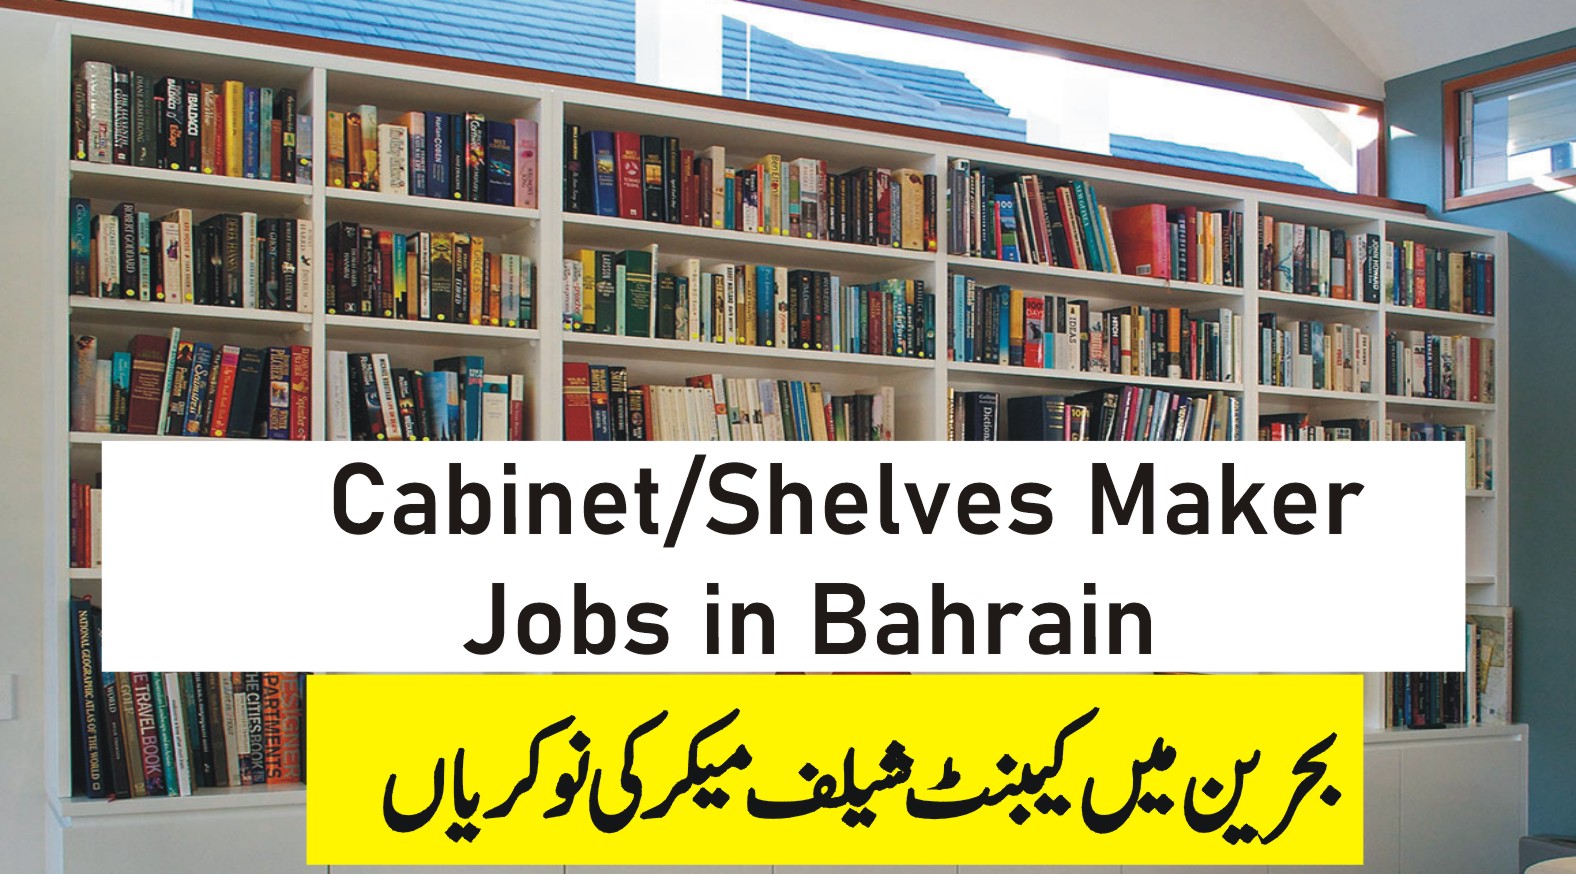 Cabinet Shelves Maker Jobs in Bahrain with Visa Sponsorship Apply Now